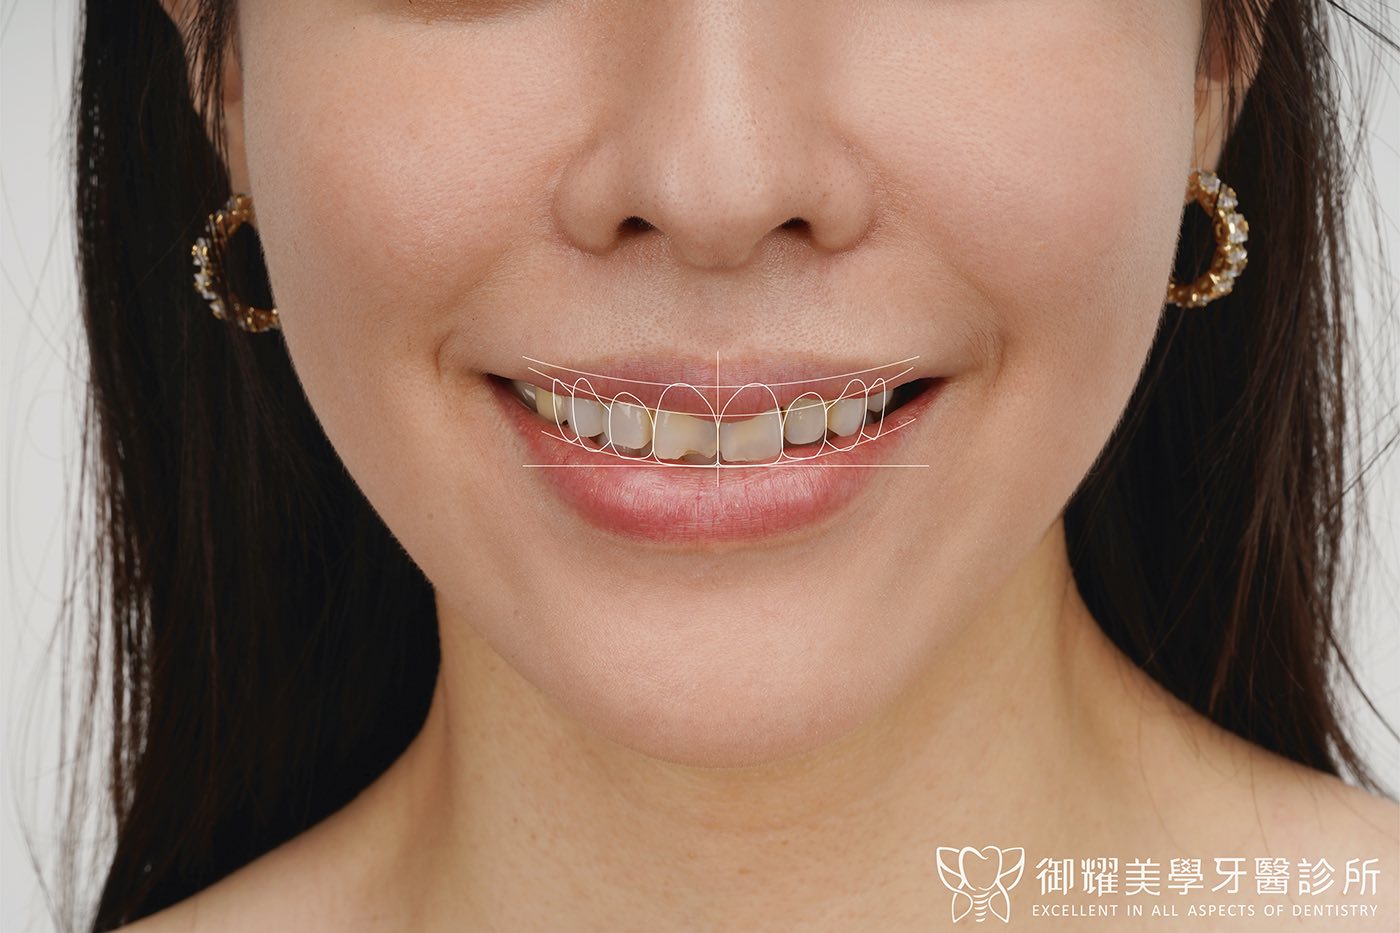 陶瓷貼片術前笑容，有牙齒顏色不均、側門牙長短不一、微笑曲線不夠飽滿等問題；在照片上先標出貼片完成後的牙齒外型與微笑曲線